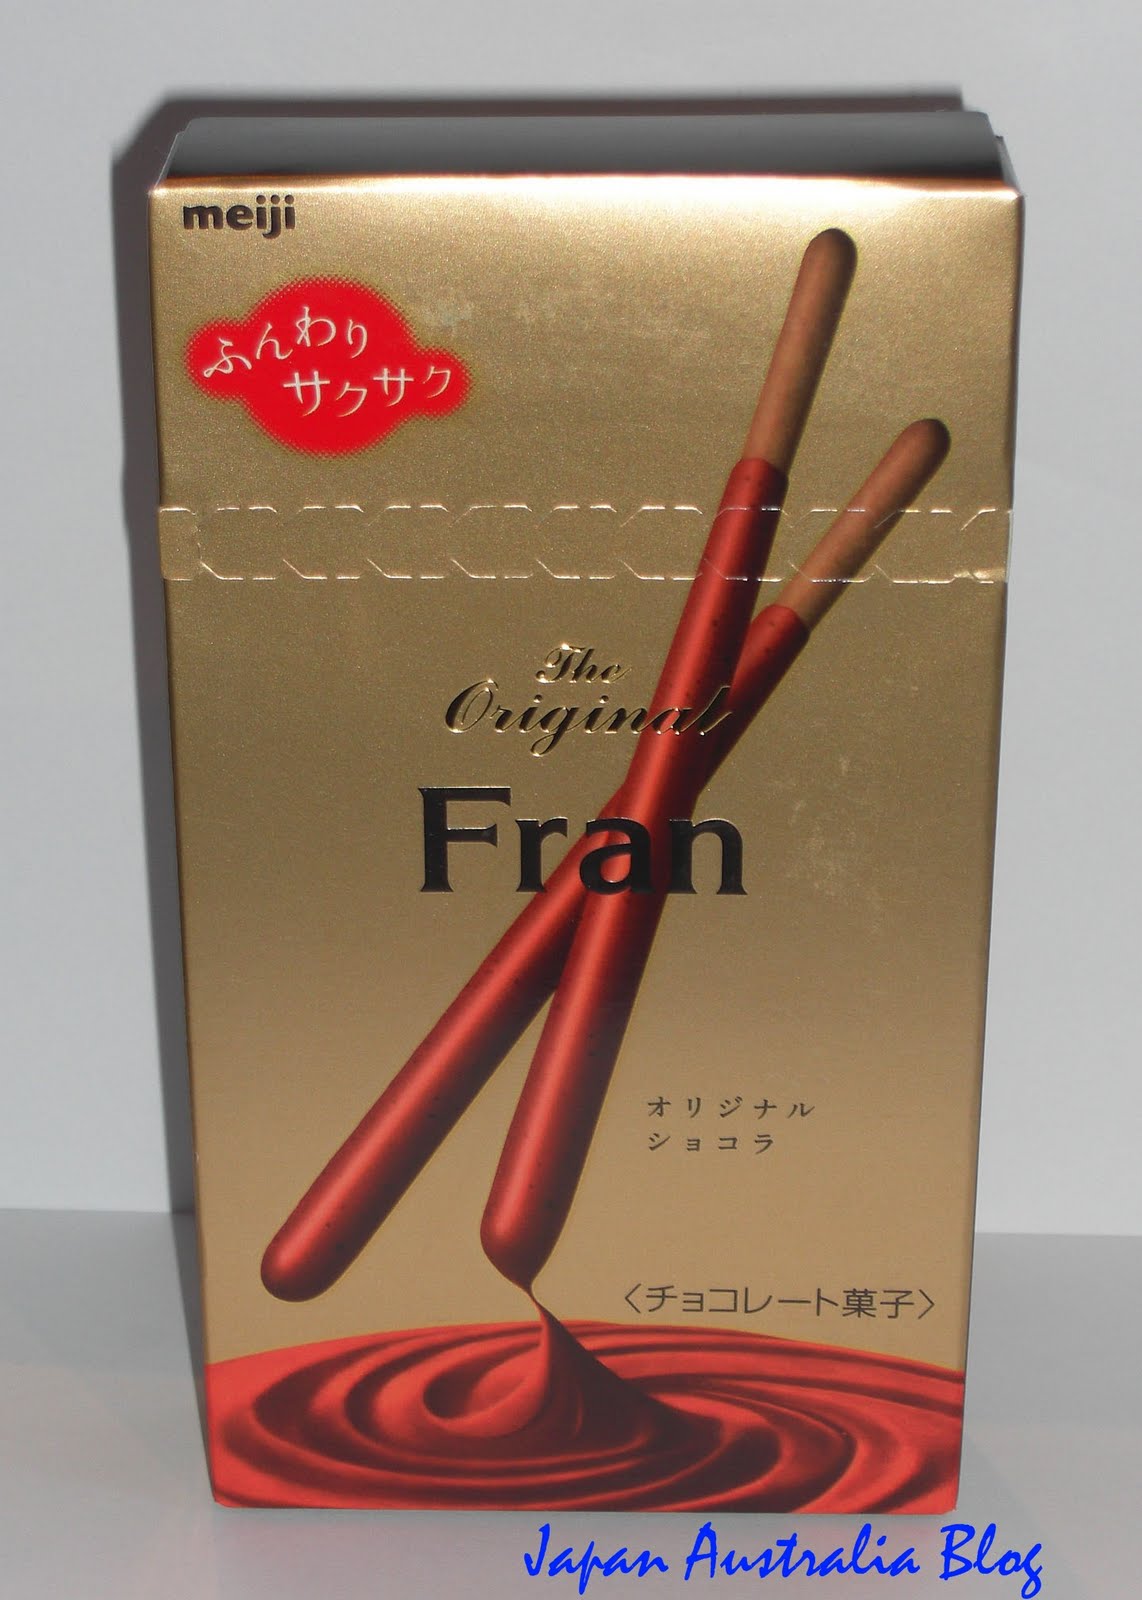 Japanese Fran